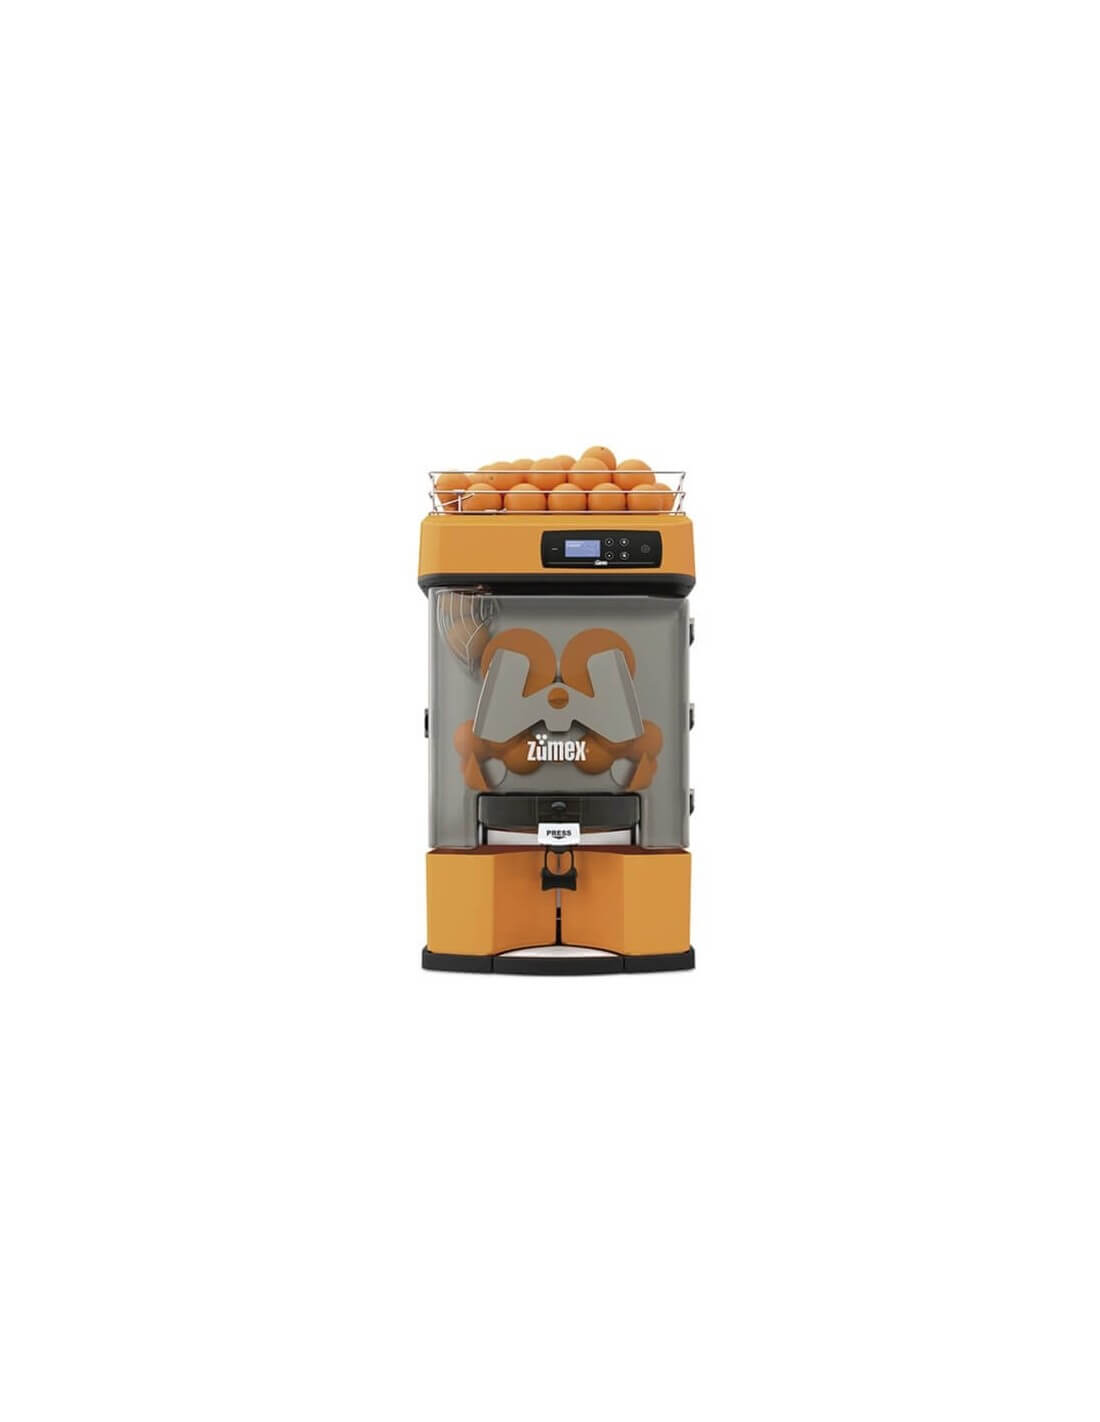 Exprimidor automático de jugos Zumex modelo New Versatile Pro OS